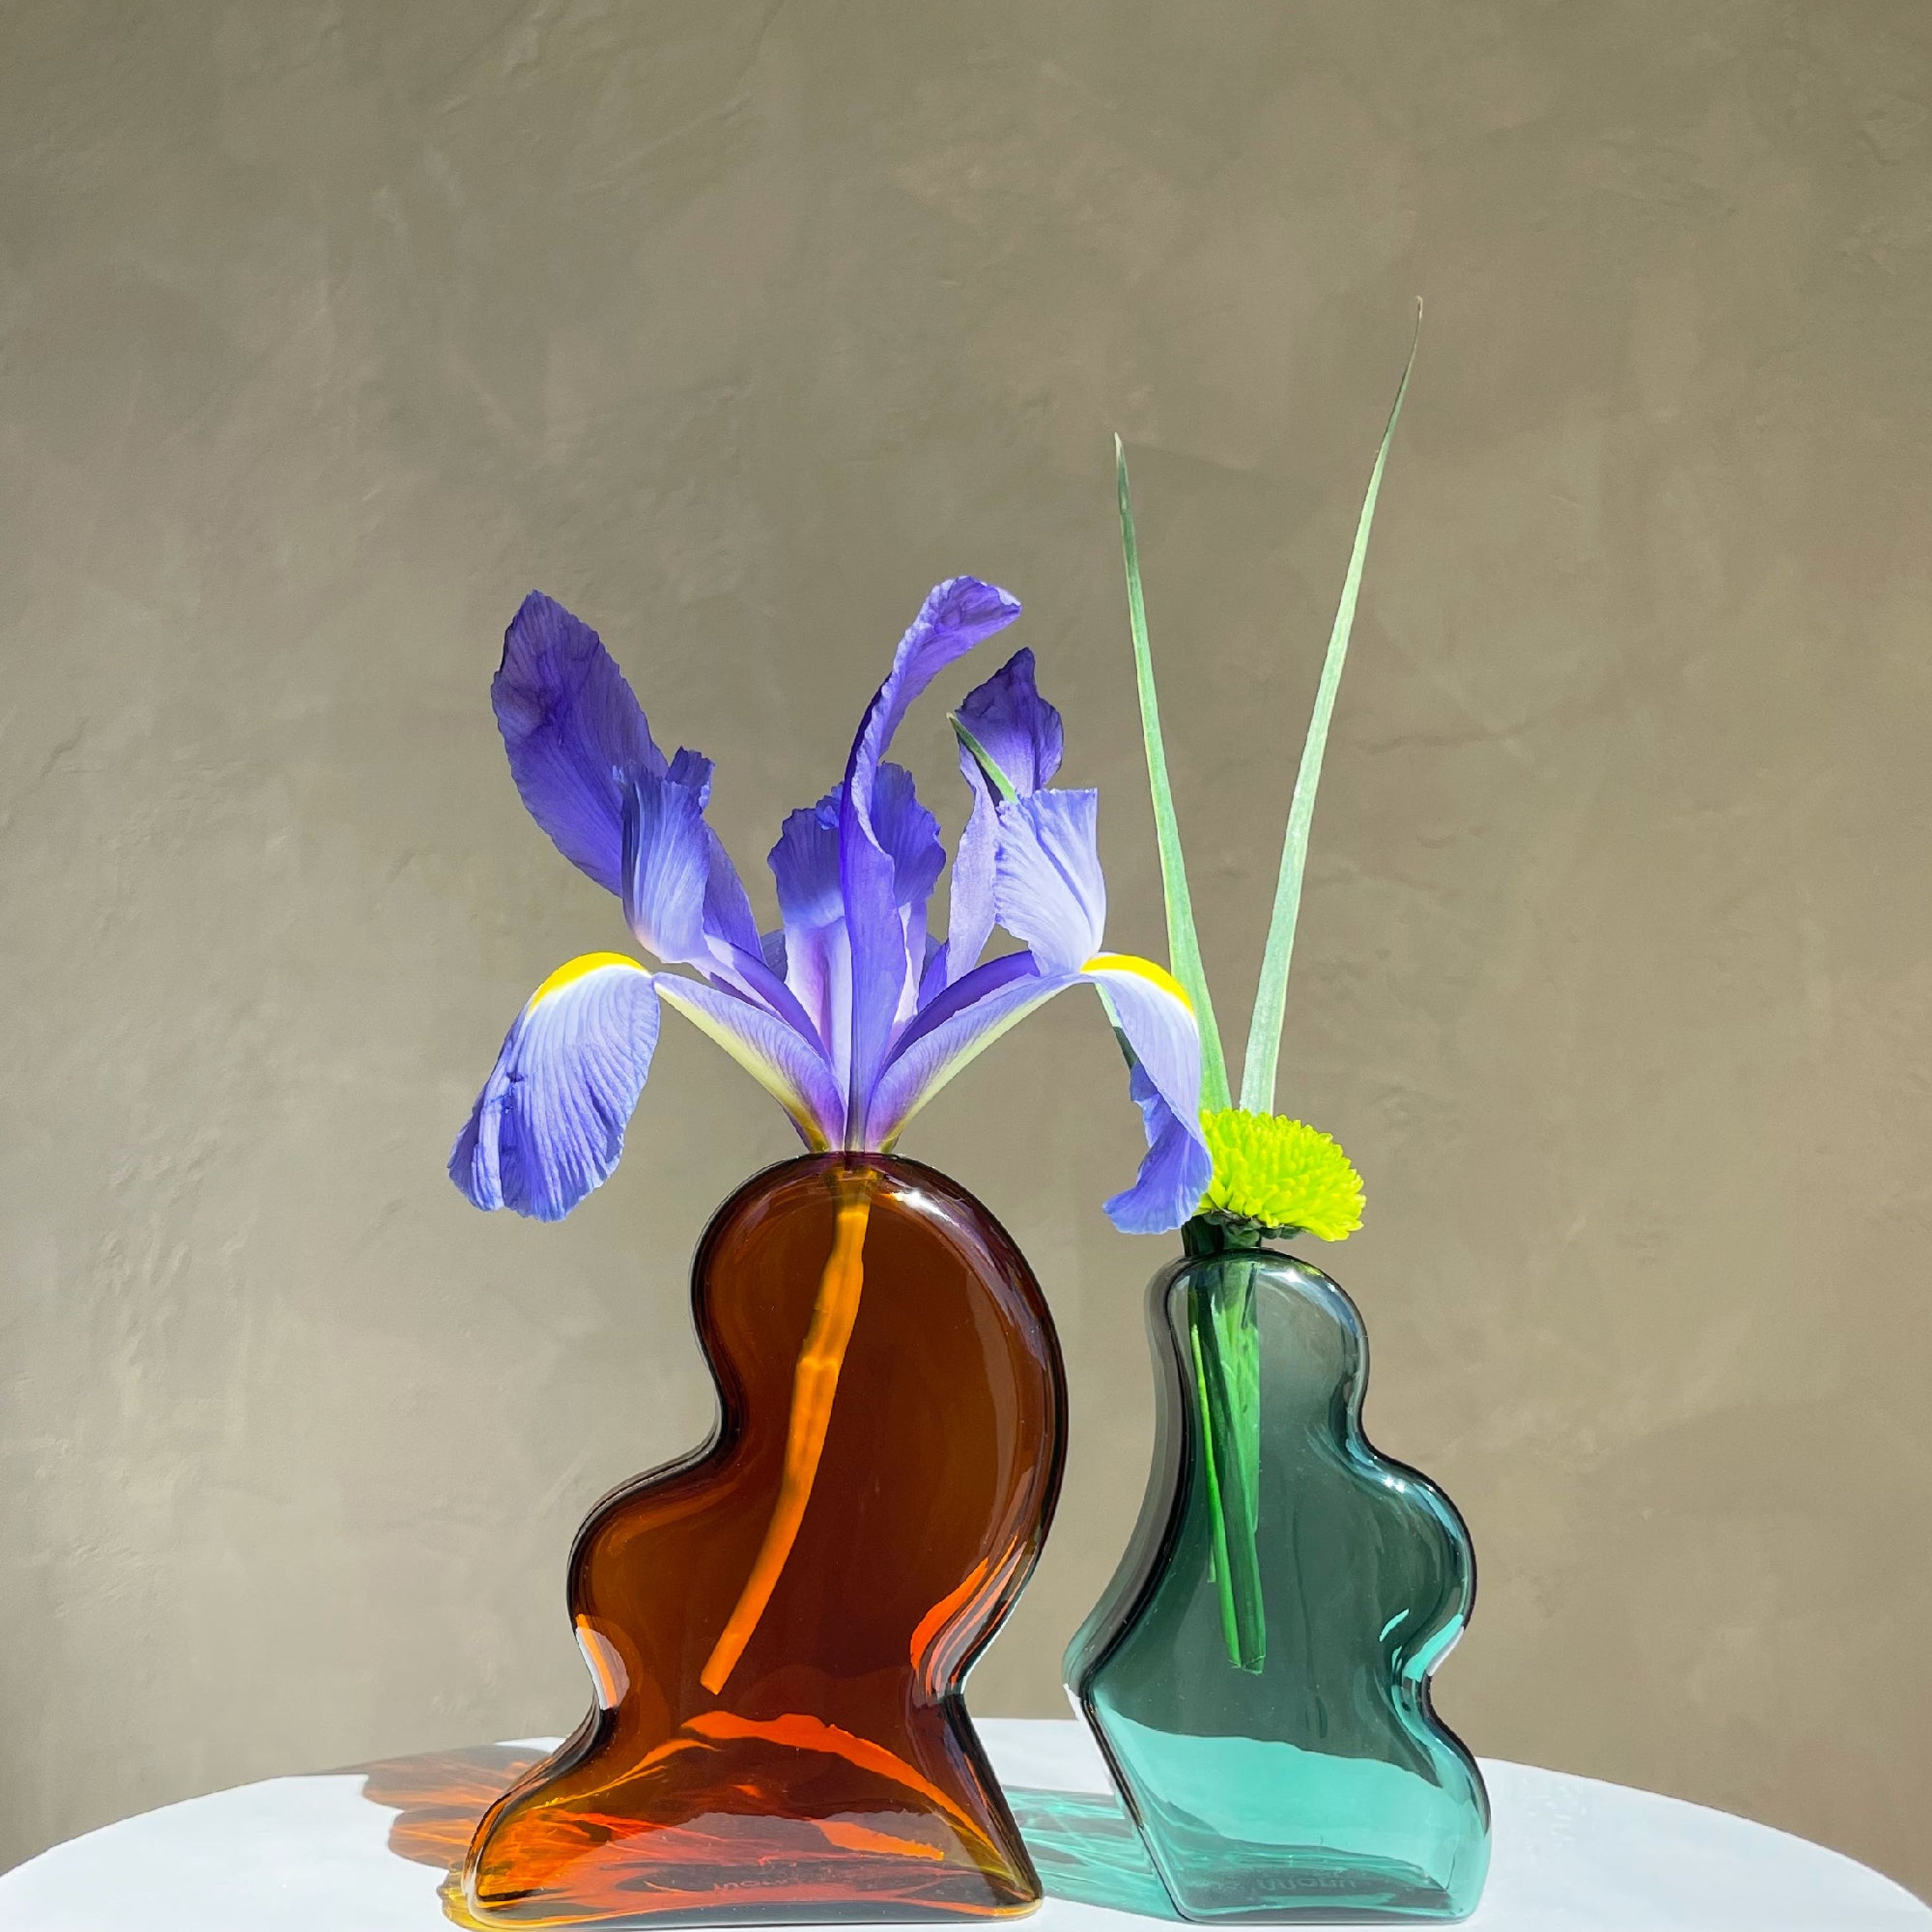 Interlocking Vase — Amber/Teal